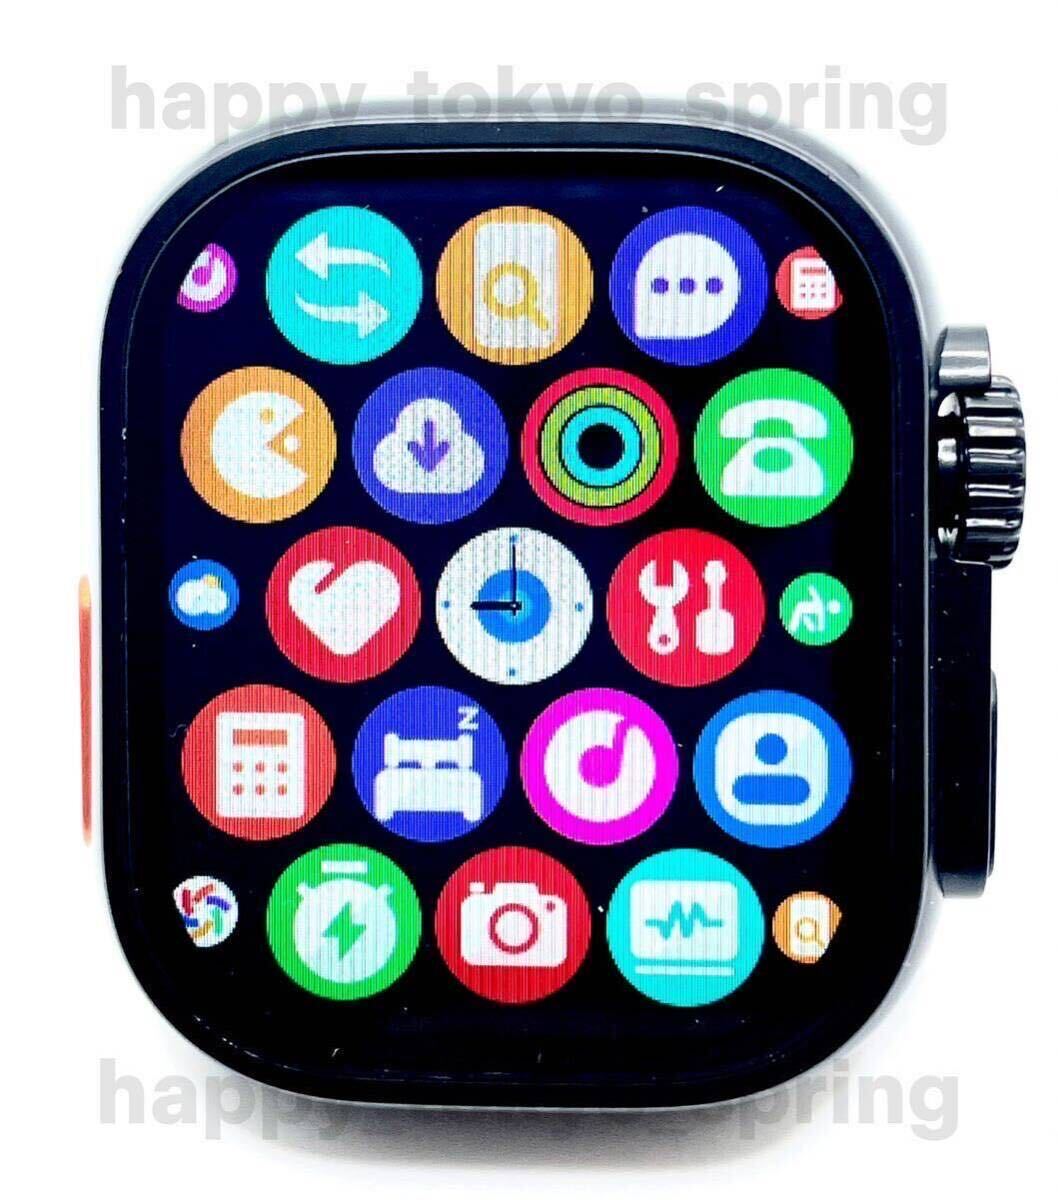  новый товар HK9 Ultra Black Edition 2.19 дюймовый большой экран S9 смарт-часы телефонный разговор музыка многофункциональный здоровье . средний кислород кровяное давление Apple Watch9 товар-заменитель 